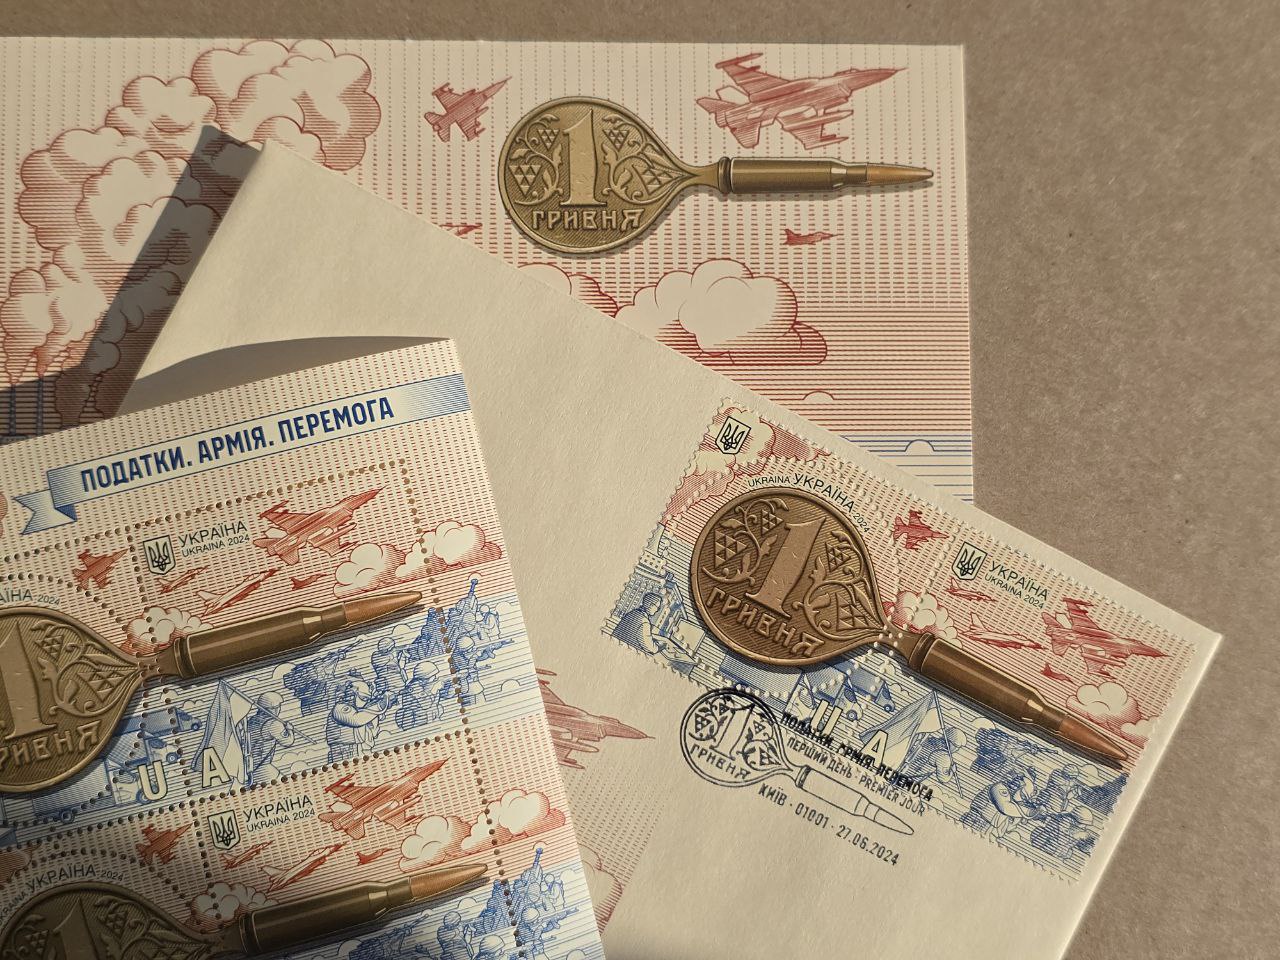 Укрпошта випустила нові поштові марки круглої та квадратної іорми